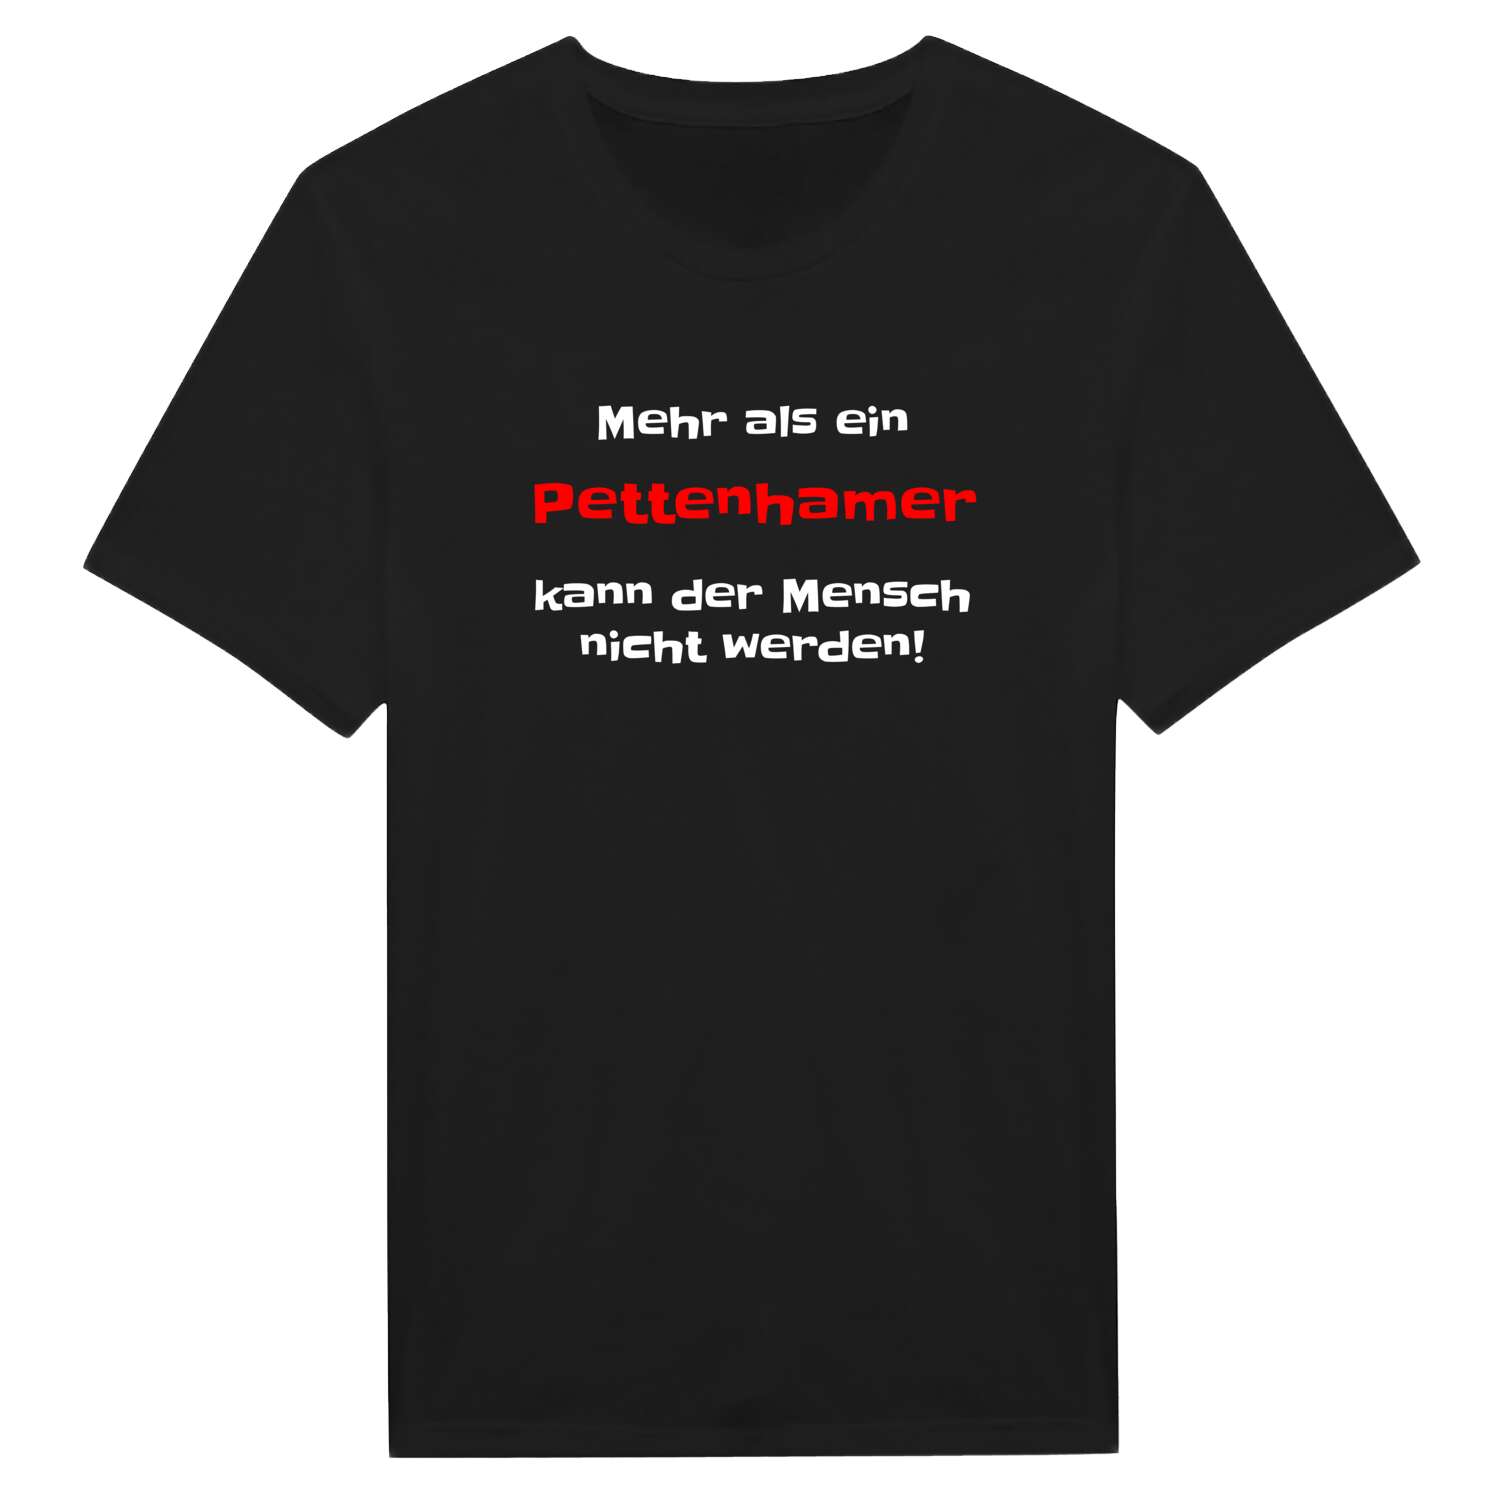 Pettenham T-Shirt »Mehr als ein«